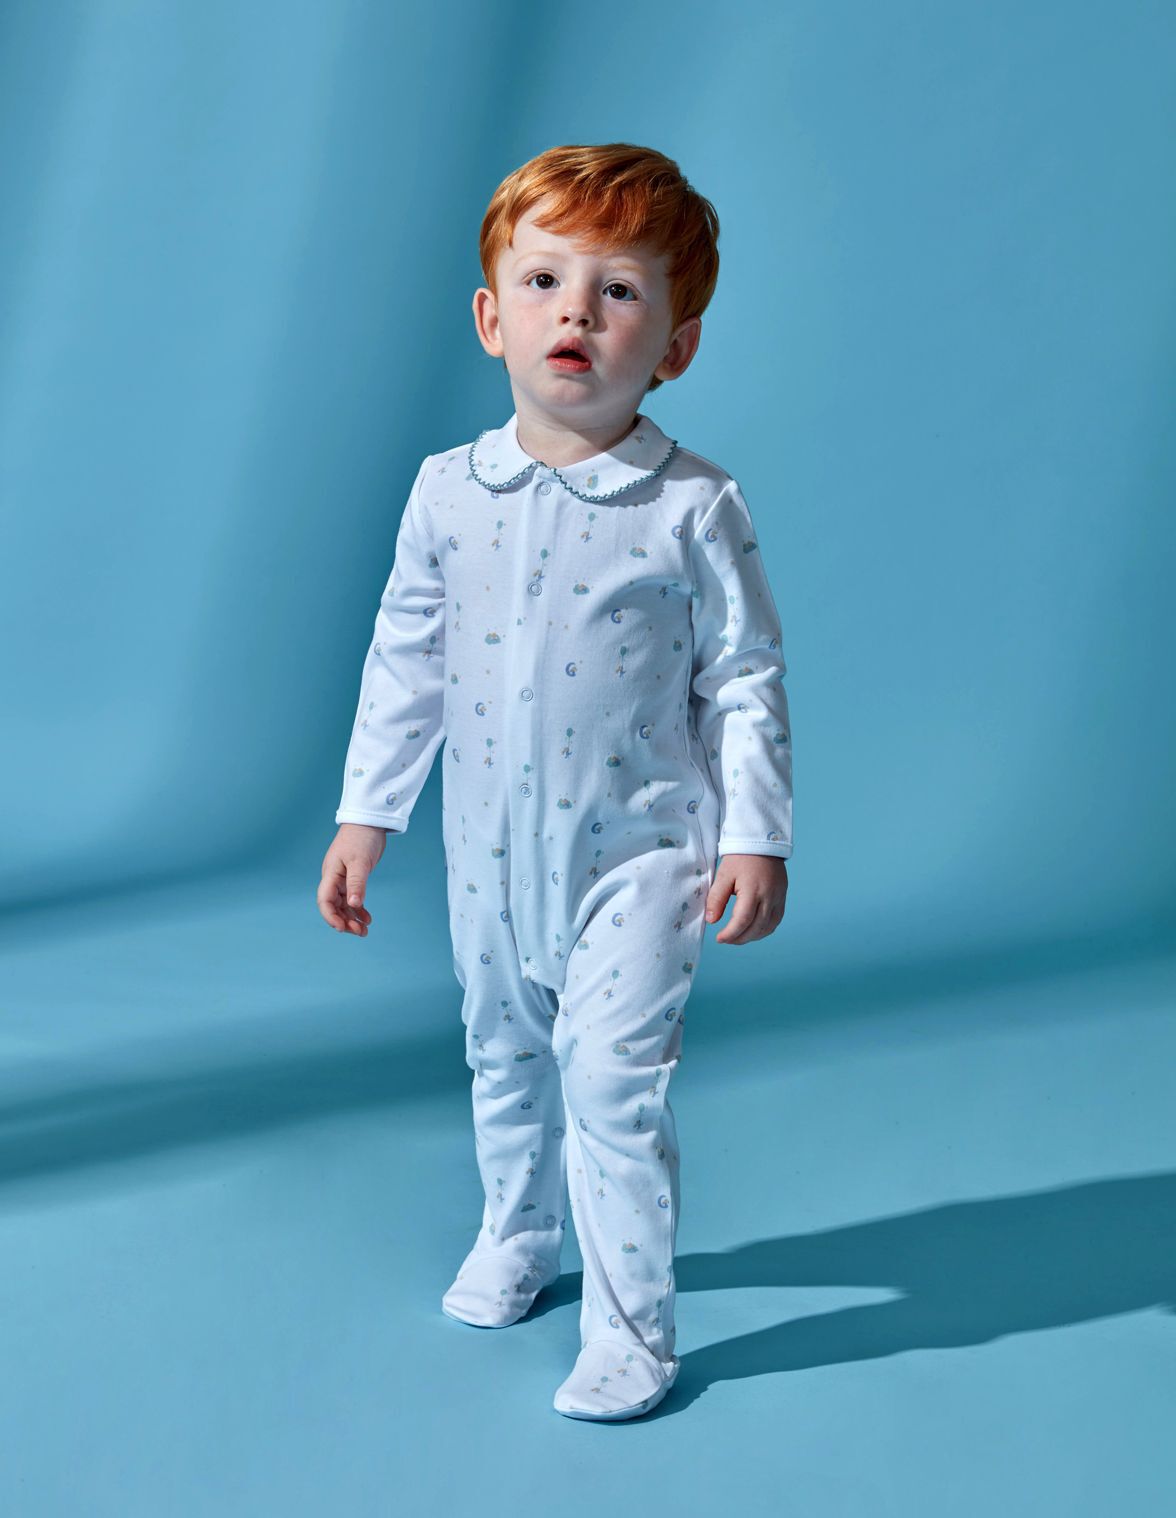 Mercancía de moda Pelele Verano – Pijama para Dormir- Ropa de Regalo Pelele  Bebe Niño 100% algodón- Sin Manga para Bebe de 0 Mes a 18 Meses Exclusivo  en línea Tienda insignia